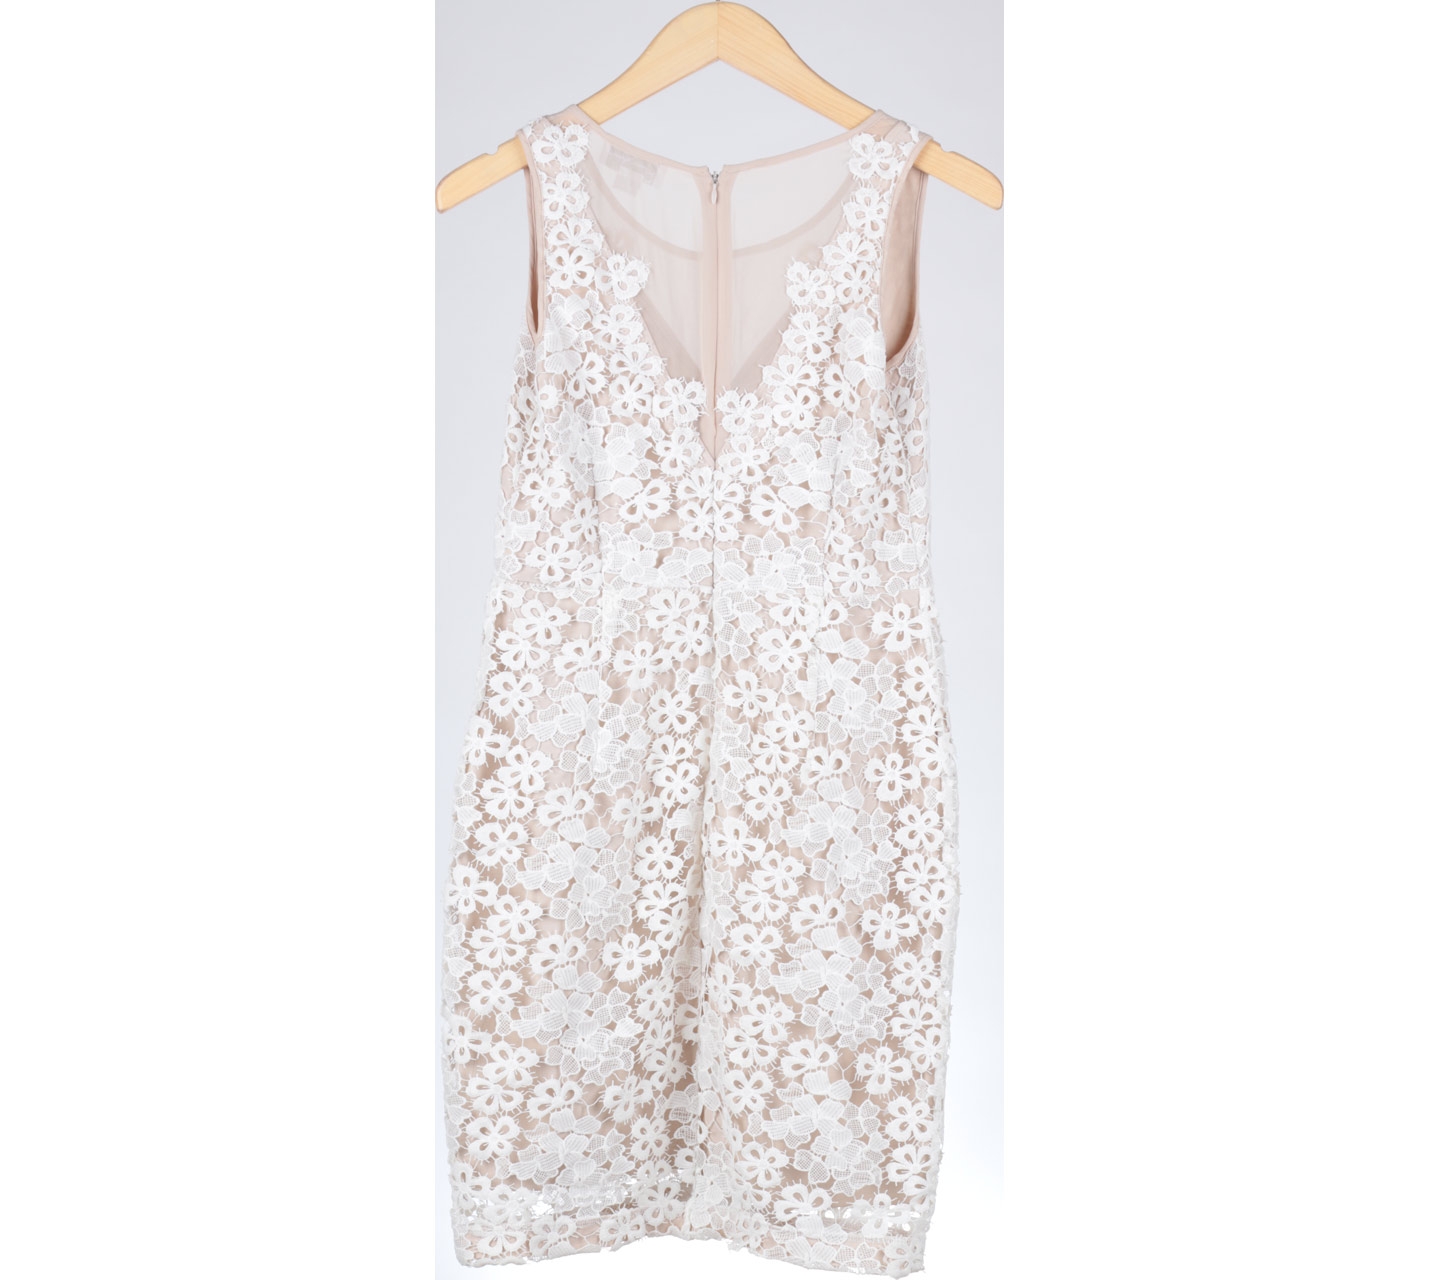 Jessica Simpson White And Cream Lace Mini Dress